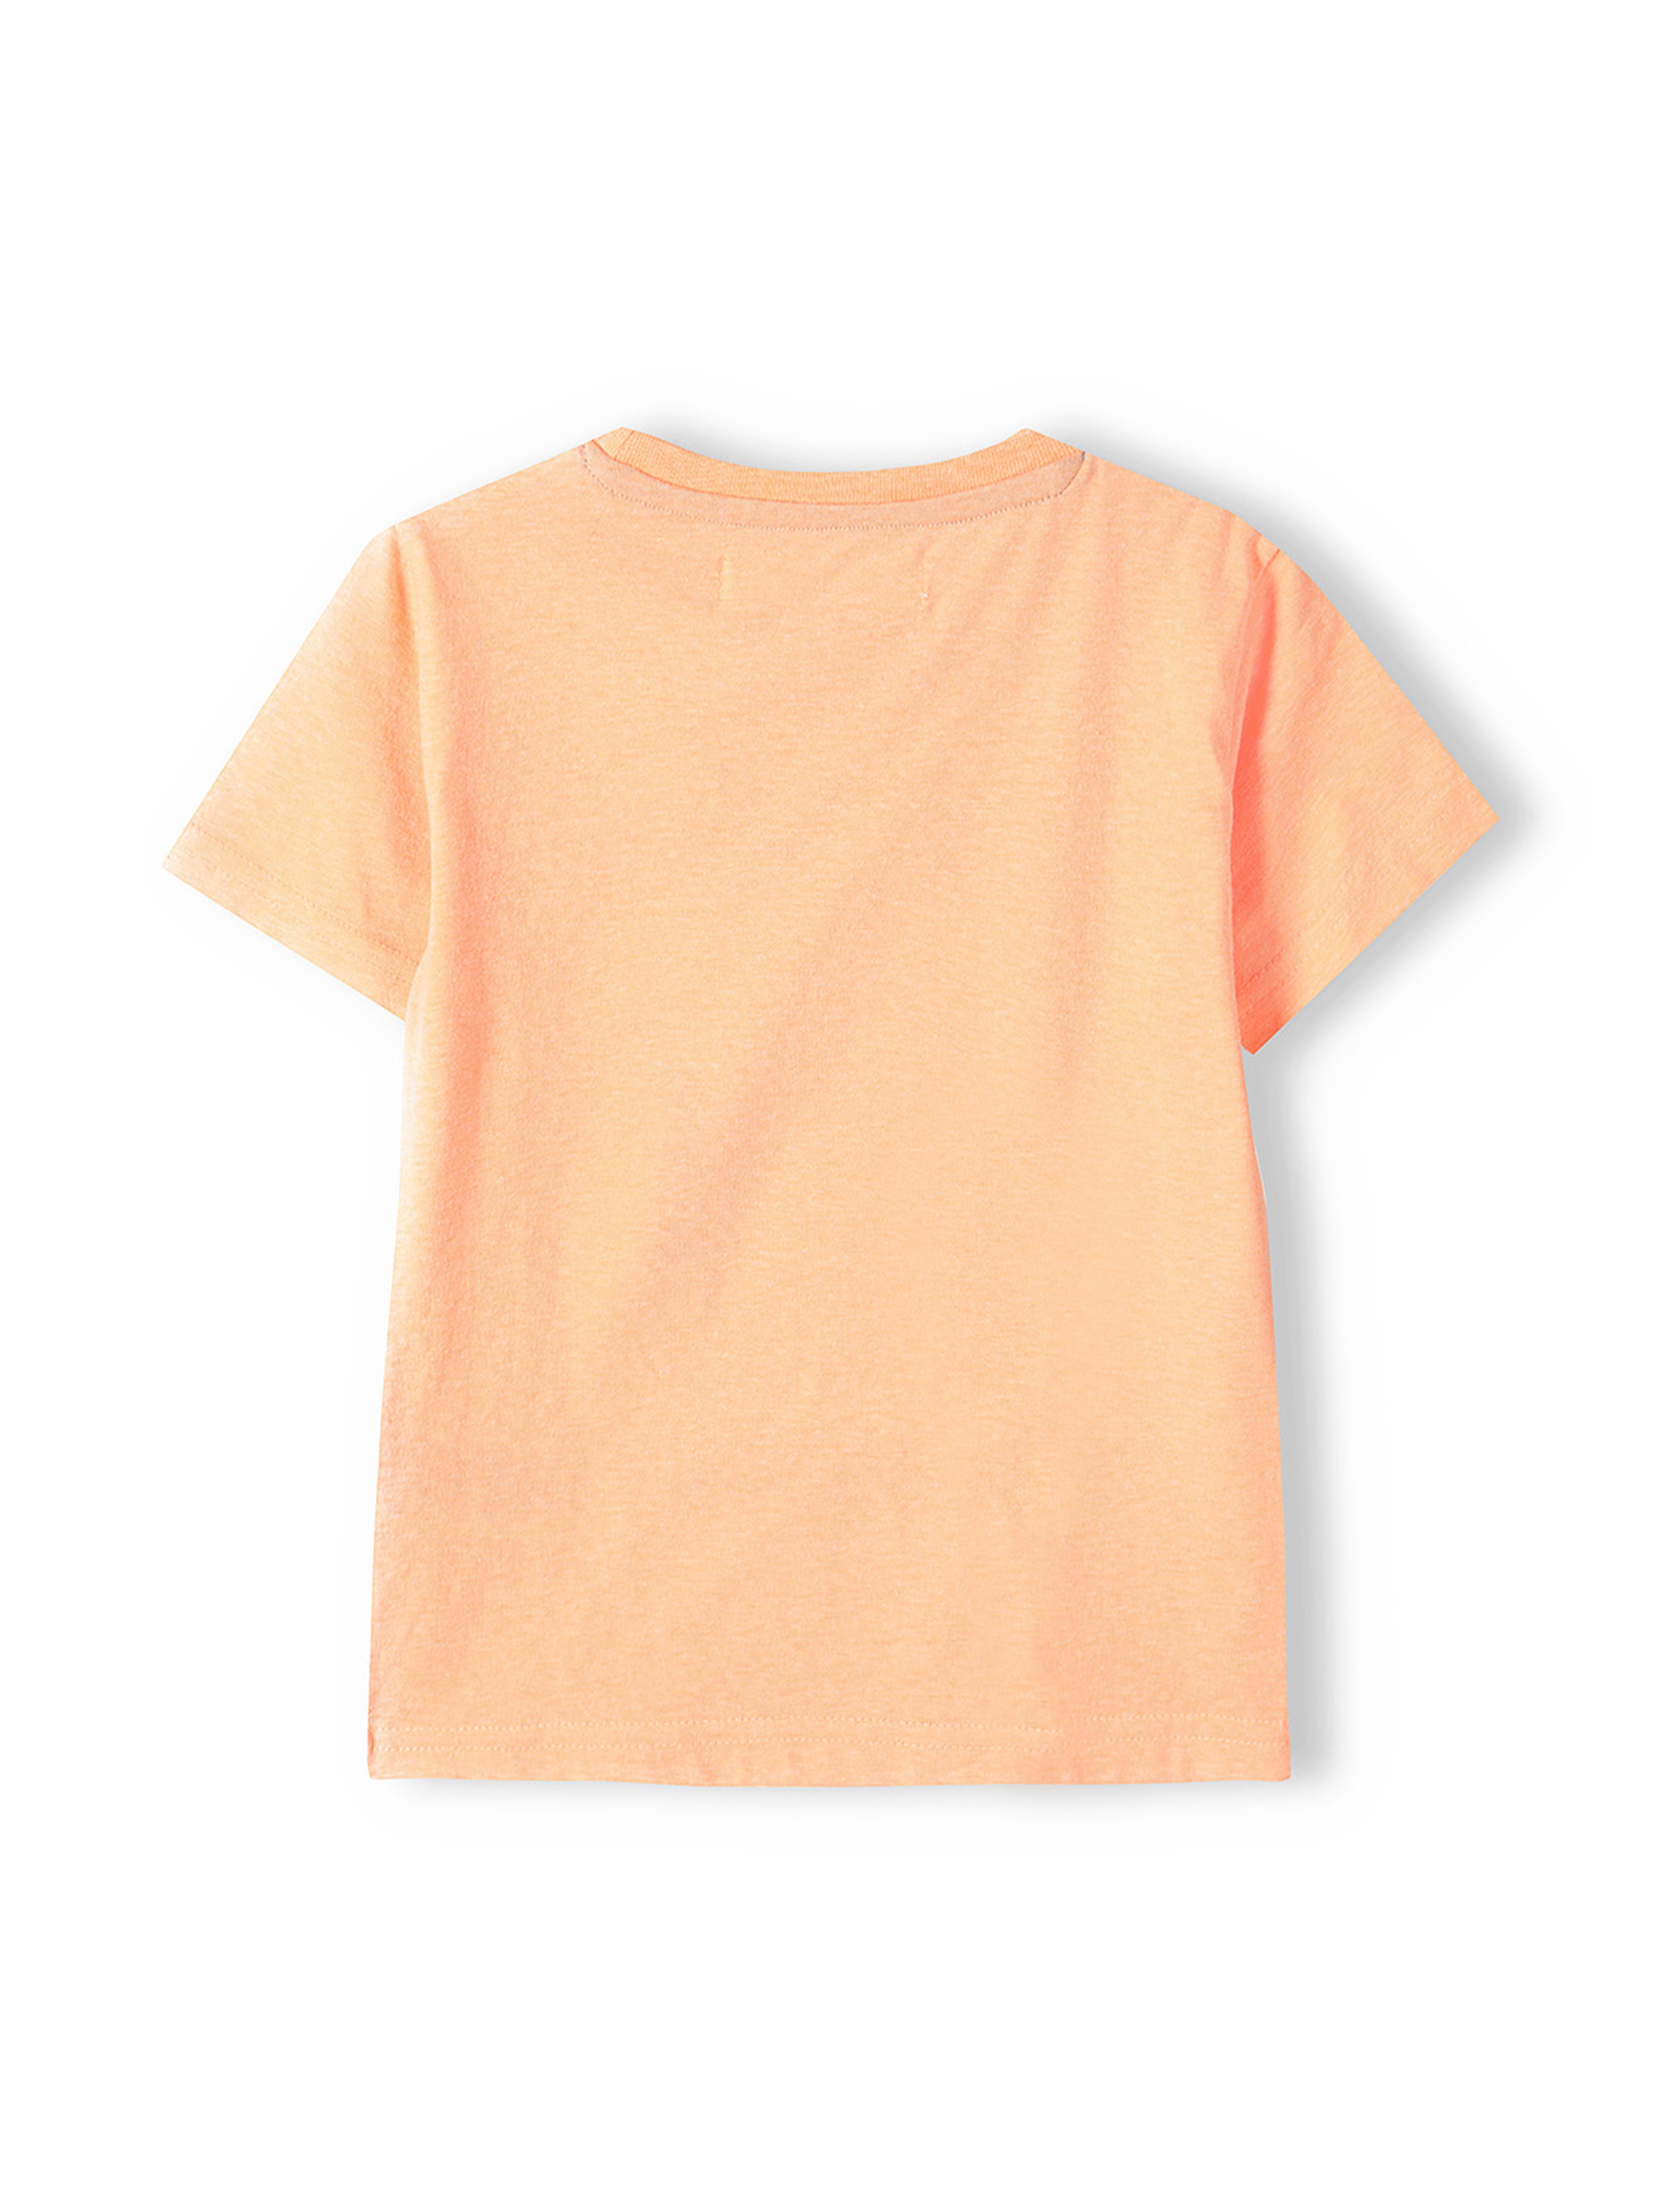 Pomarańczowa koszulka chłopięca z nadrukiem